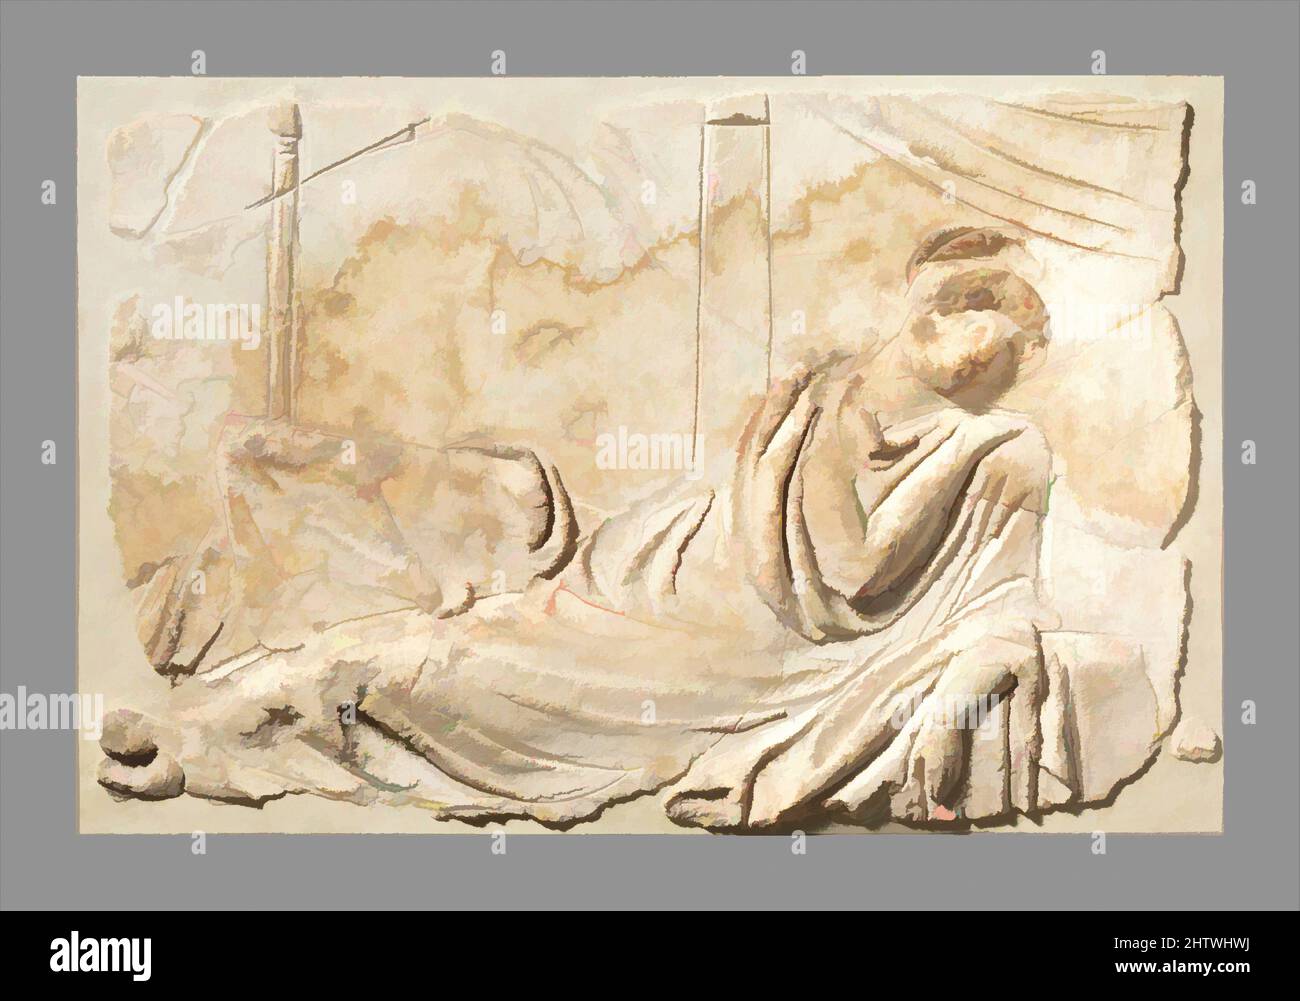 Arte inspirado en el panel de relieve de estuco, Imperial Temprano, 2nd mitad del siglo 1st d.C., Romano, Estuco, Total: 9 1/2 x 14 3/8 x 2 1/4 pulg. (24,1 x 36,5 x 5,7 cm), Miscellaneous-Stucco, con una capa pesada y un elaborado pelo, la mujer se reclina con una rodilla levantada. Su izquierda, obras clásicas modernizadas por Artotop con un toque de modernidad. Formas, color y valor, atractivo impacto visual en el arte Emociones a través de la libertad de las obras de arte de una manera contemporánea. Un mensaje atemporal que busca una nueva dirección totalmente creativa. Artistas que se están volviendo al medio digital y creando el Artotop NFT Foto de stock